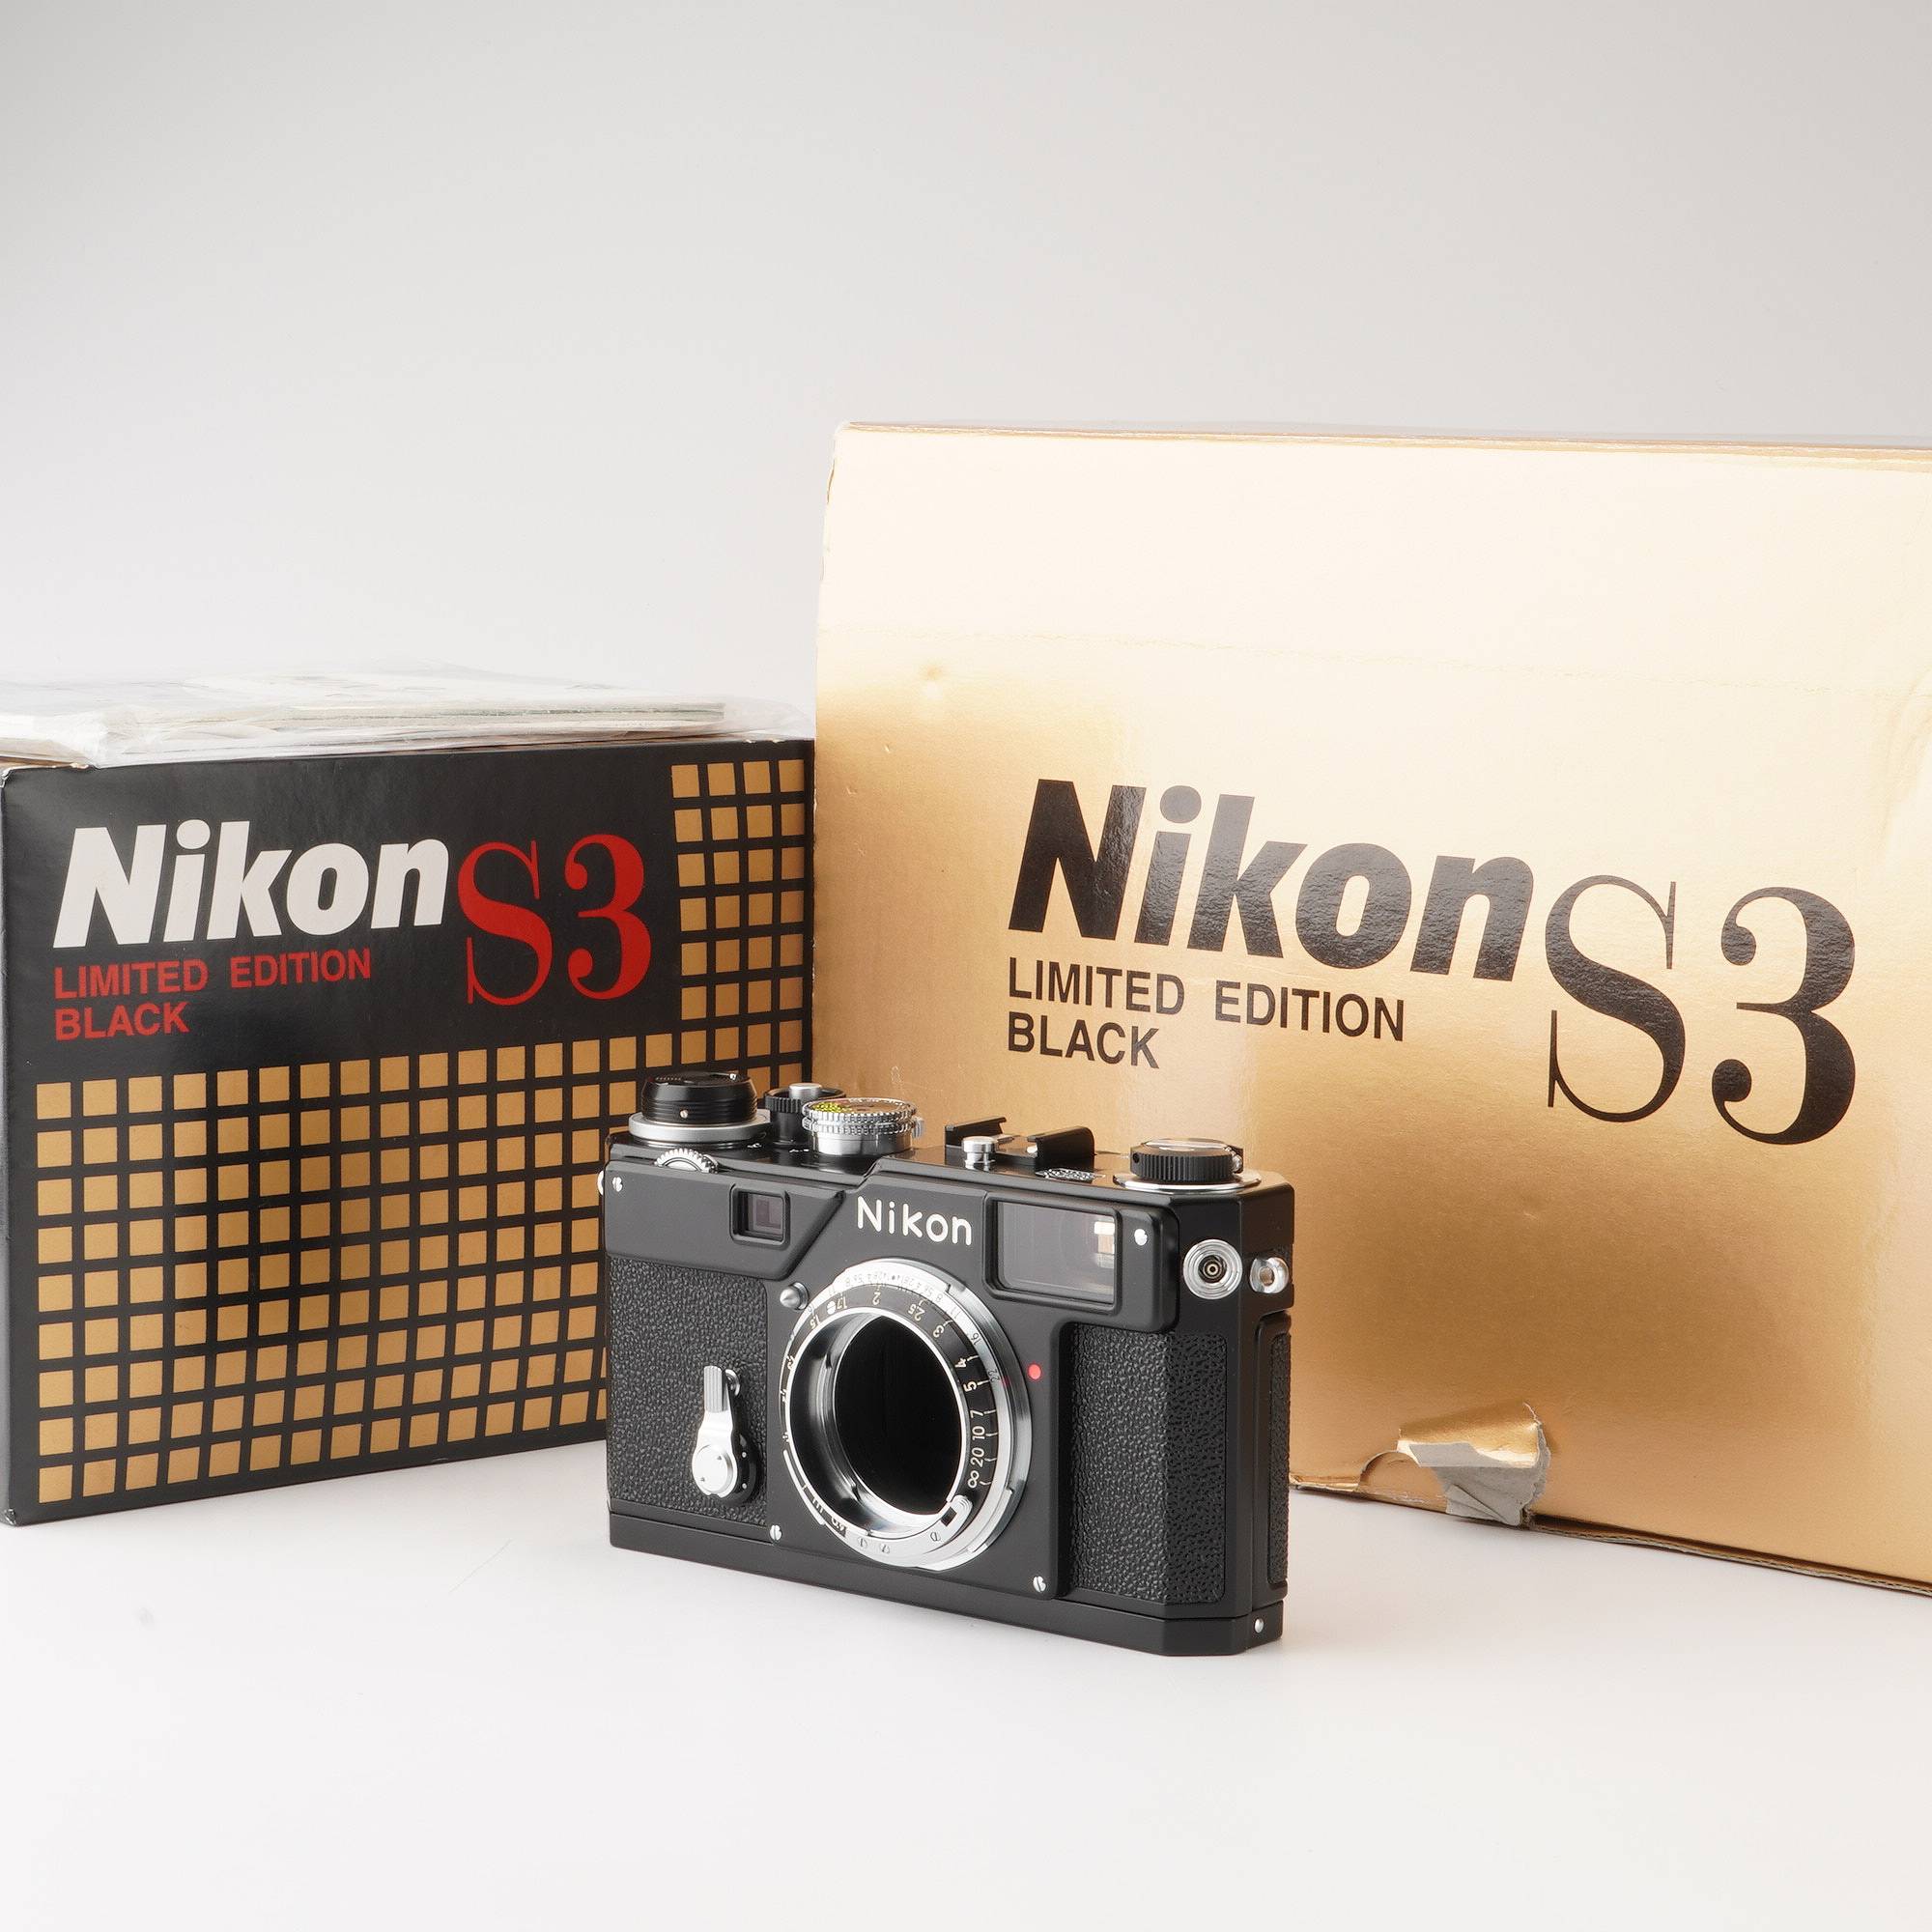 Nikon S3 LIMITED EDITION BLACK Overhauled